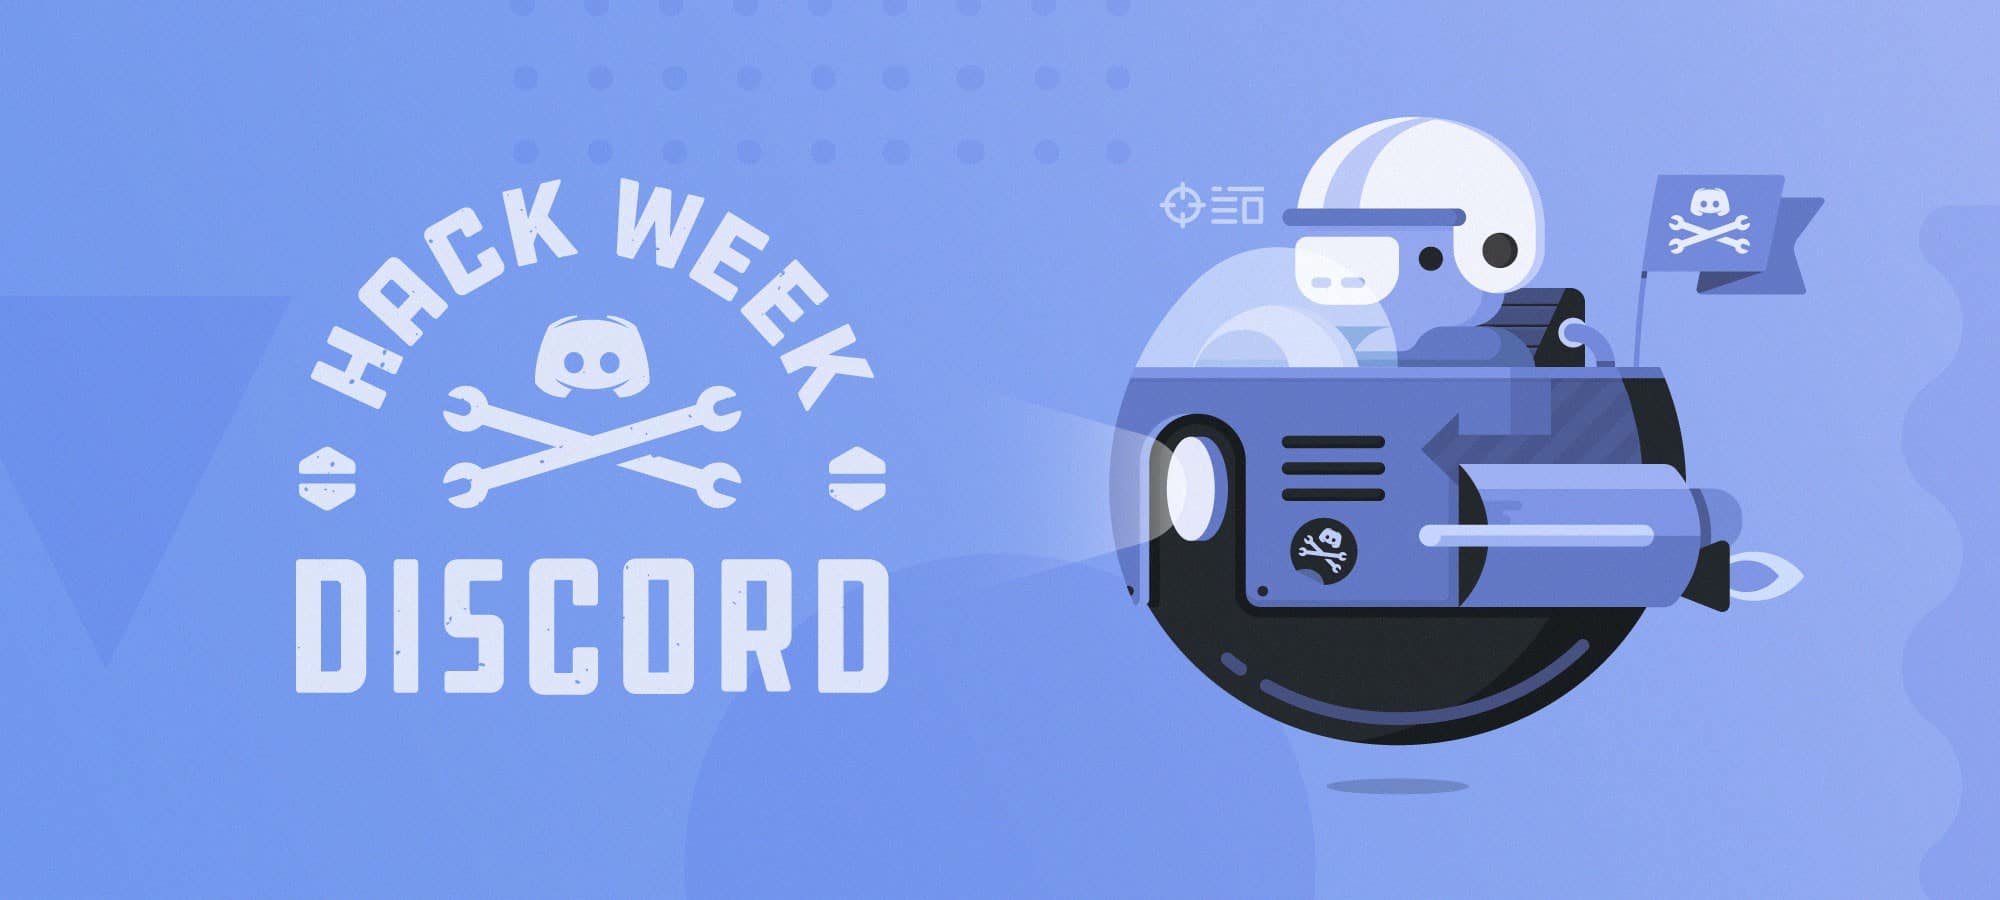 La semaine du hack de la communauté Discord ! image de couverture